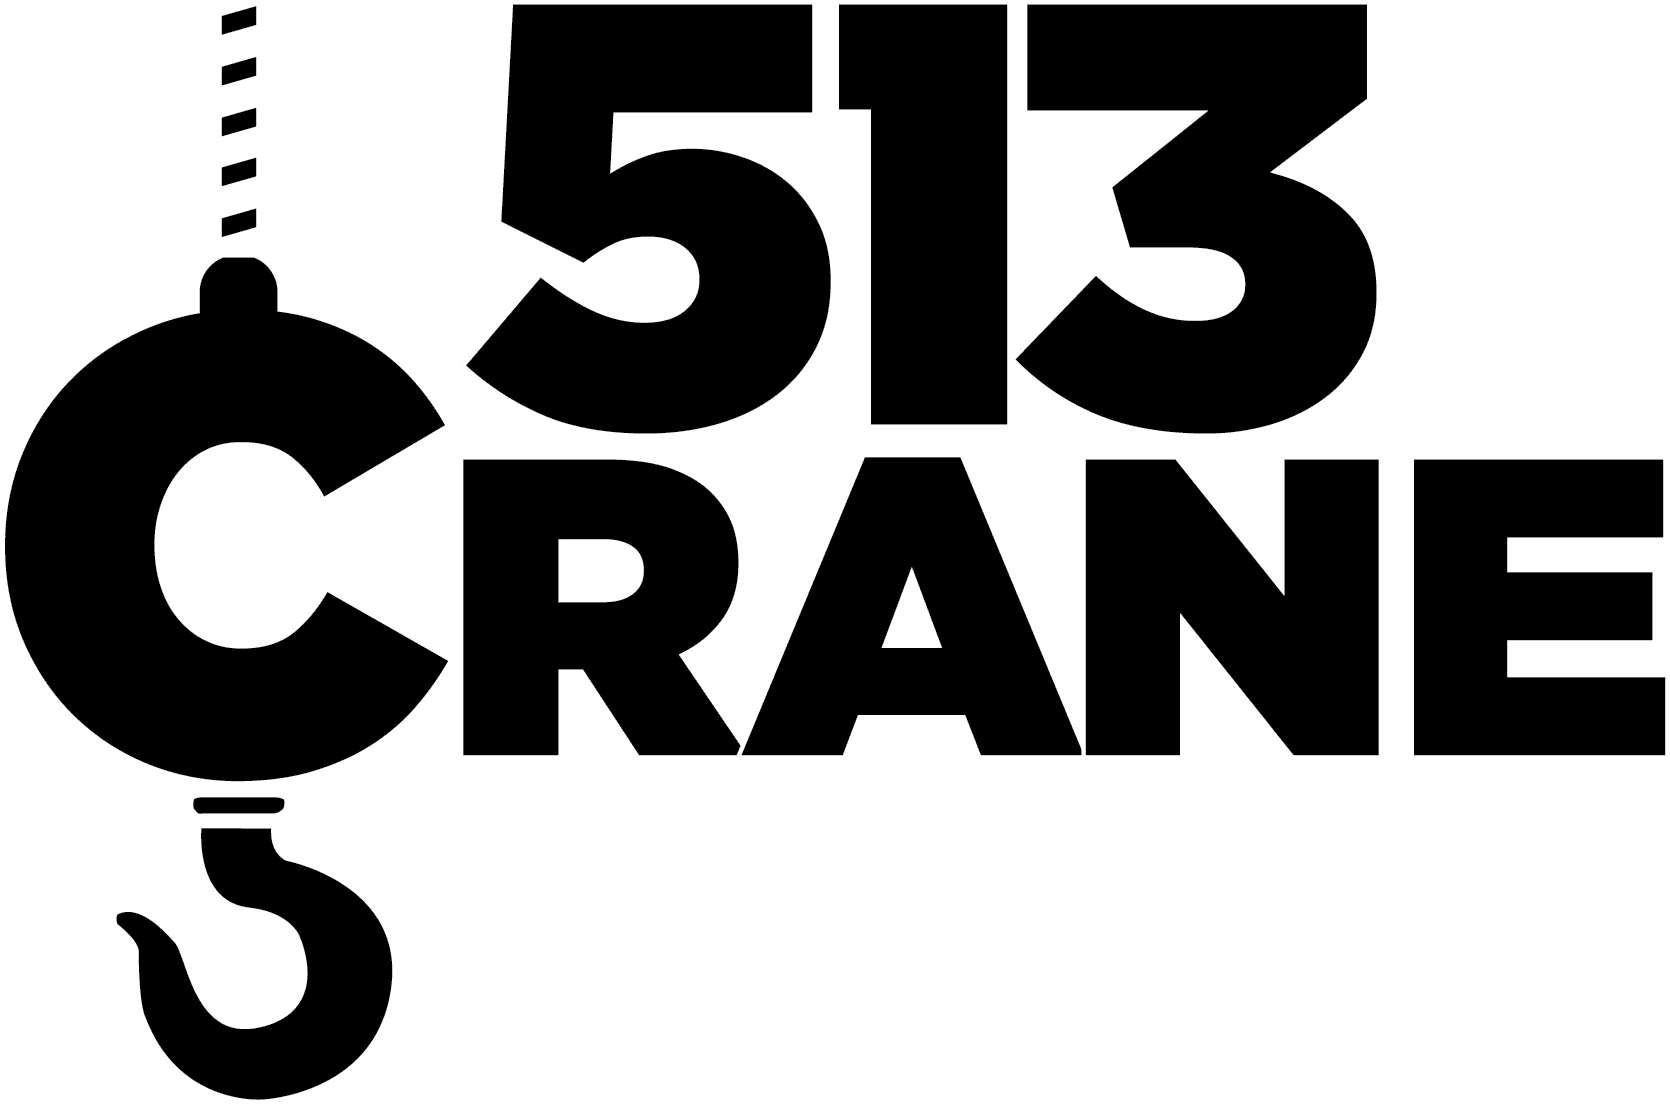 513 Crane